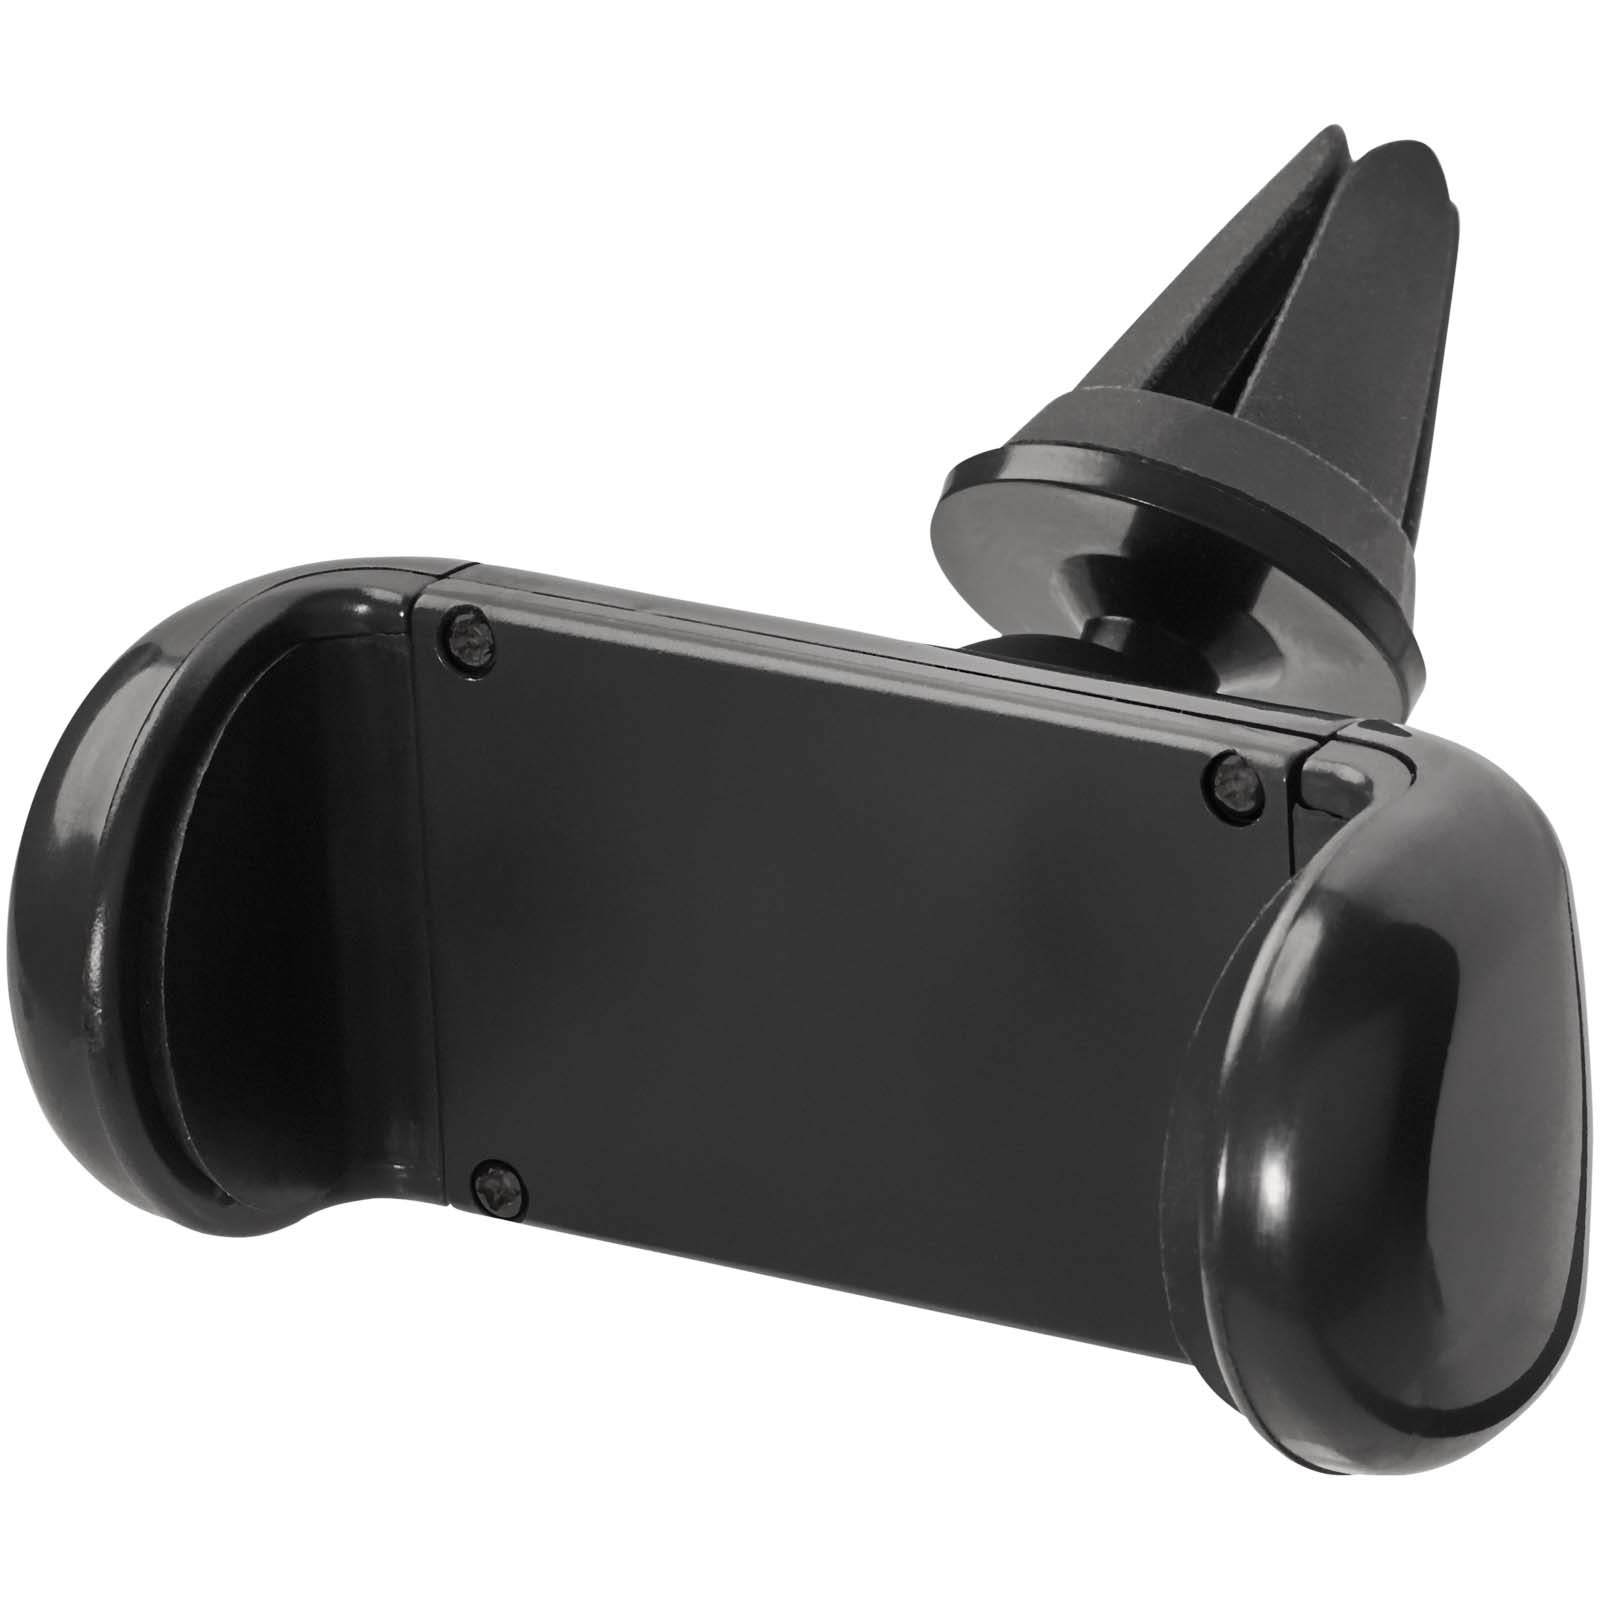 Accessoires pour téléphone et tablette - Support de téléphone portable pour voiture Grip